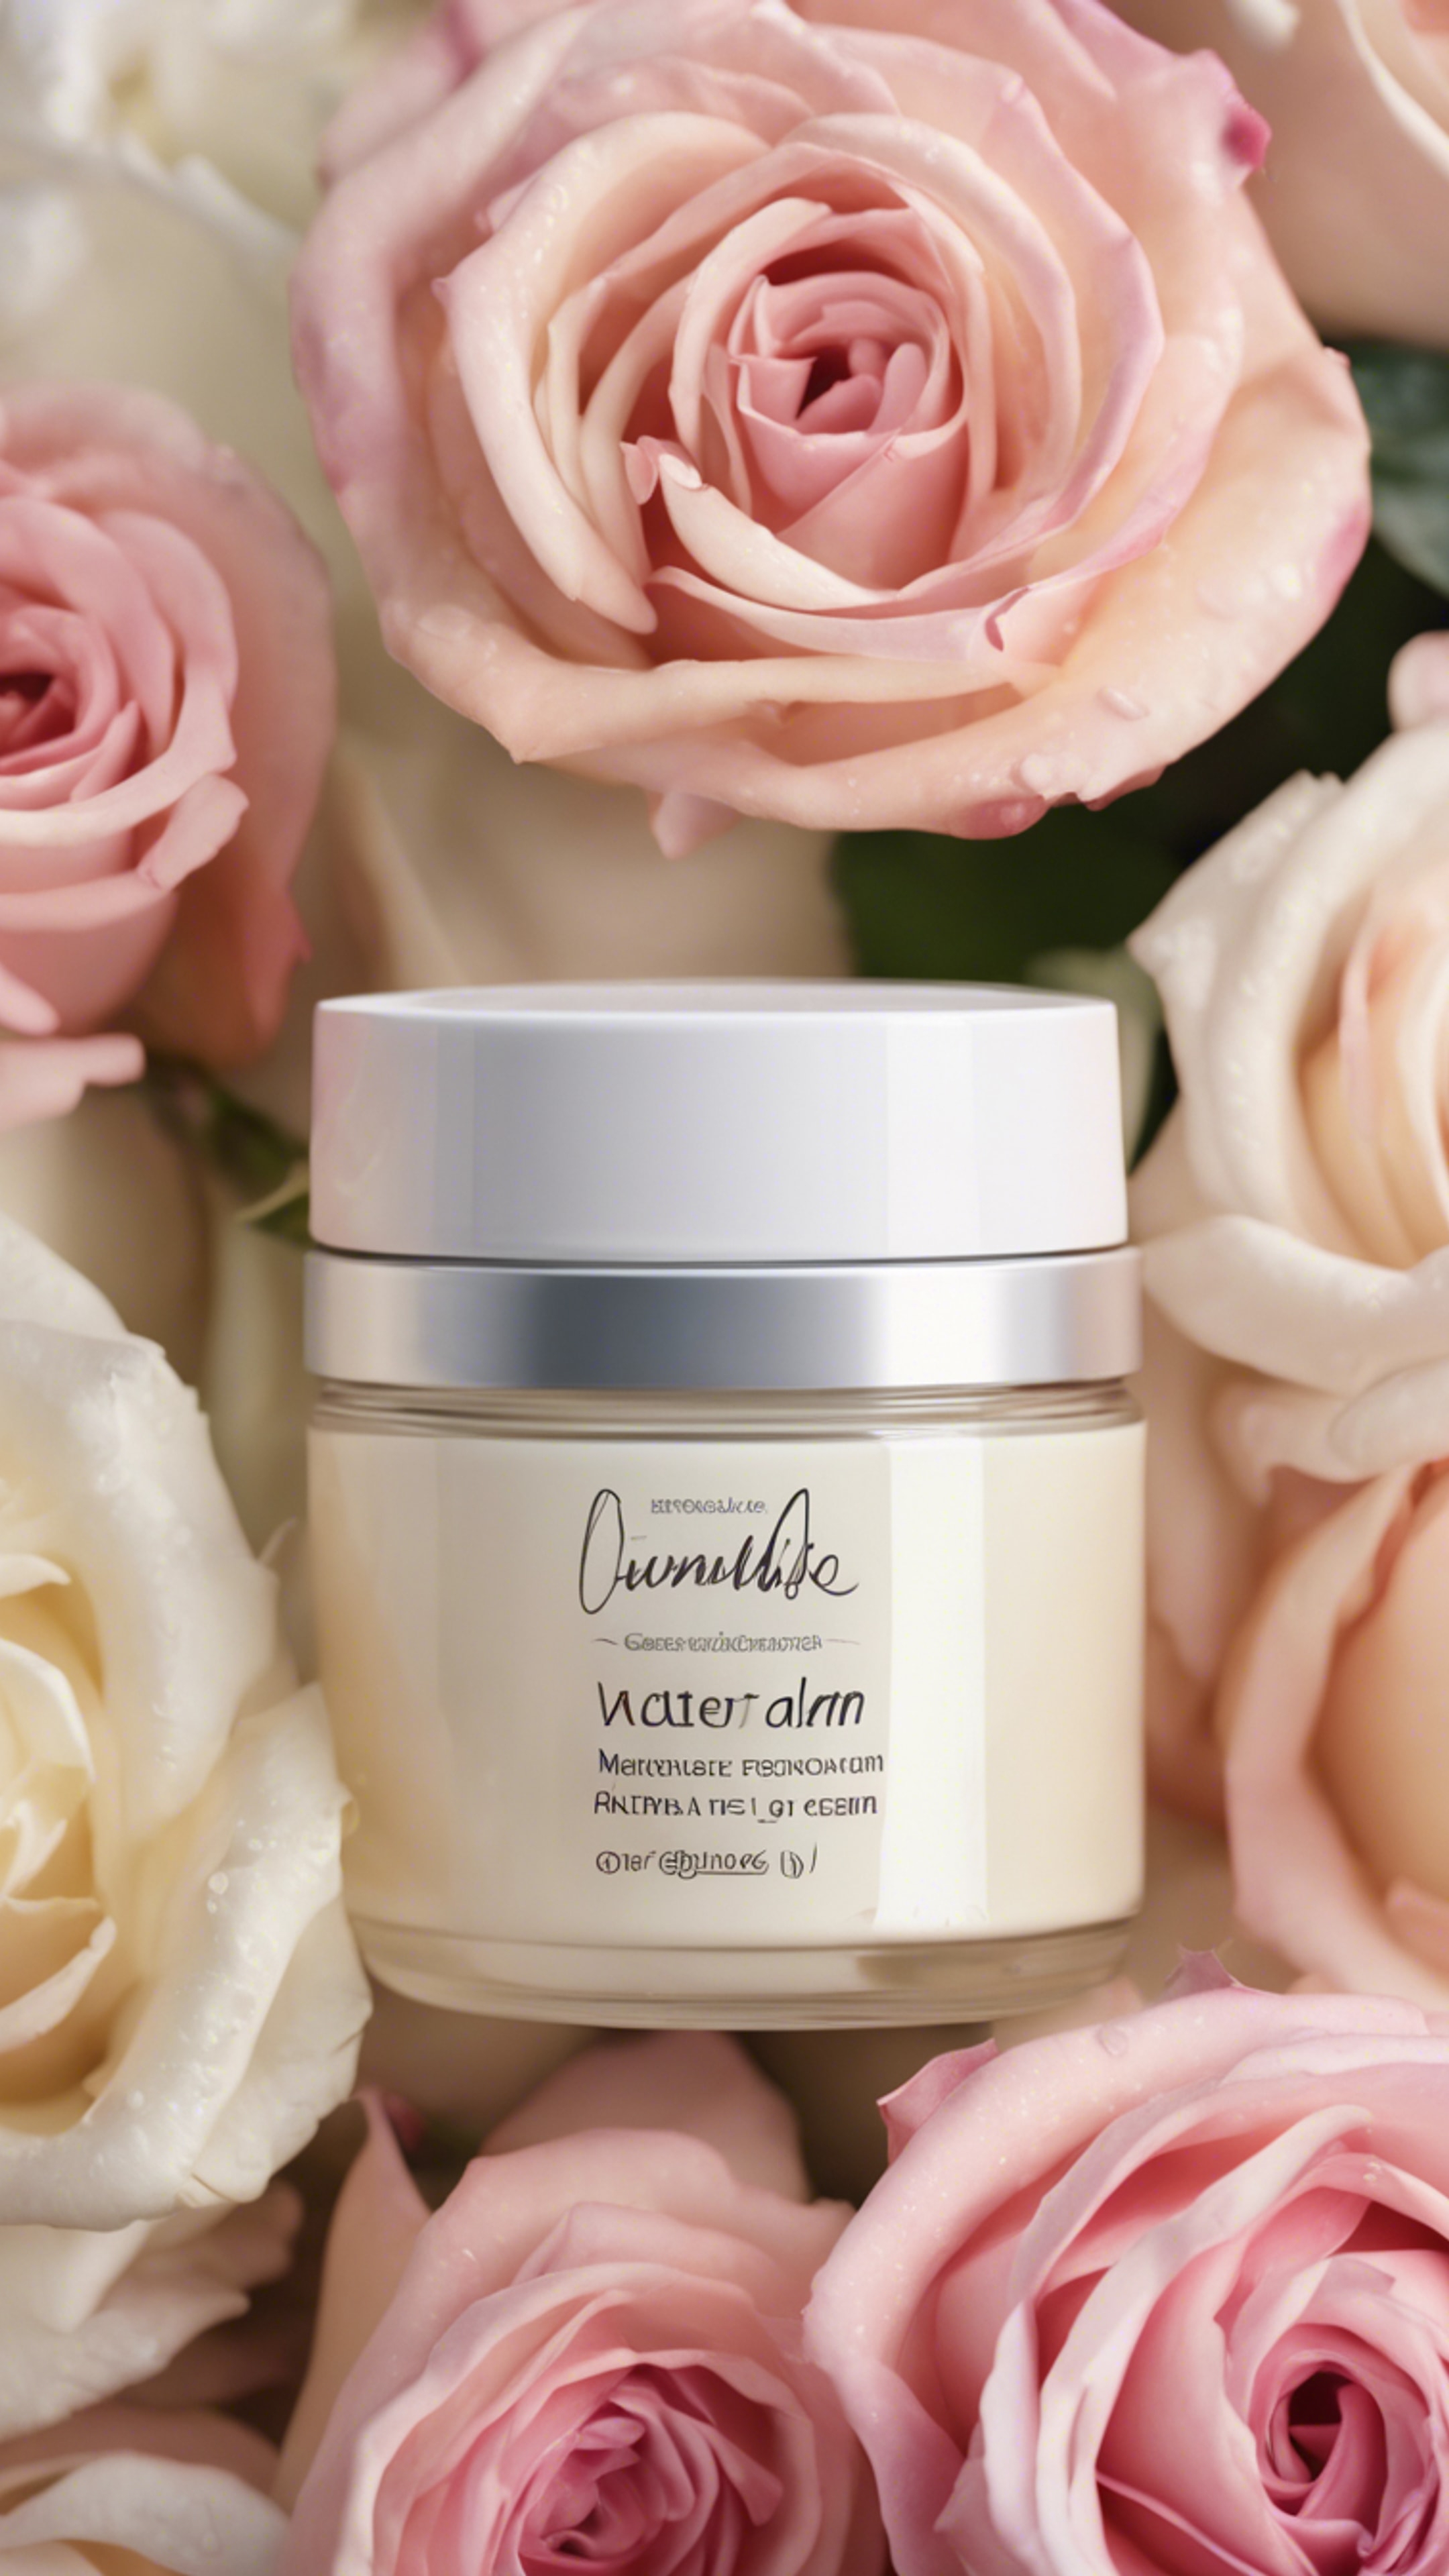 A jar of natural, luxurious, moisture-rich face cream placed amidst fresh roses.壁紙[b9b99bd6ea5043dab5cc]